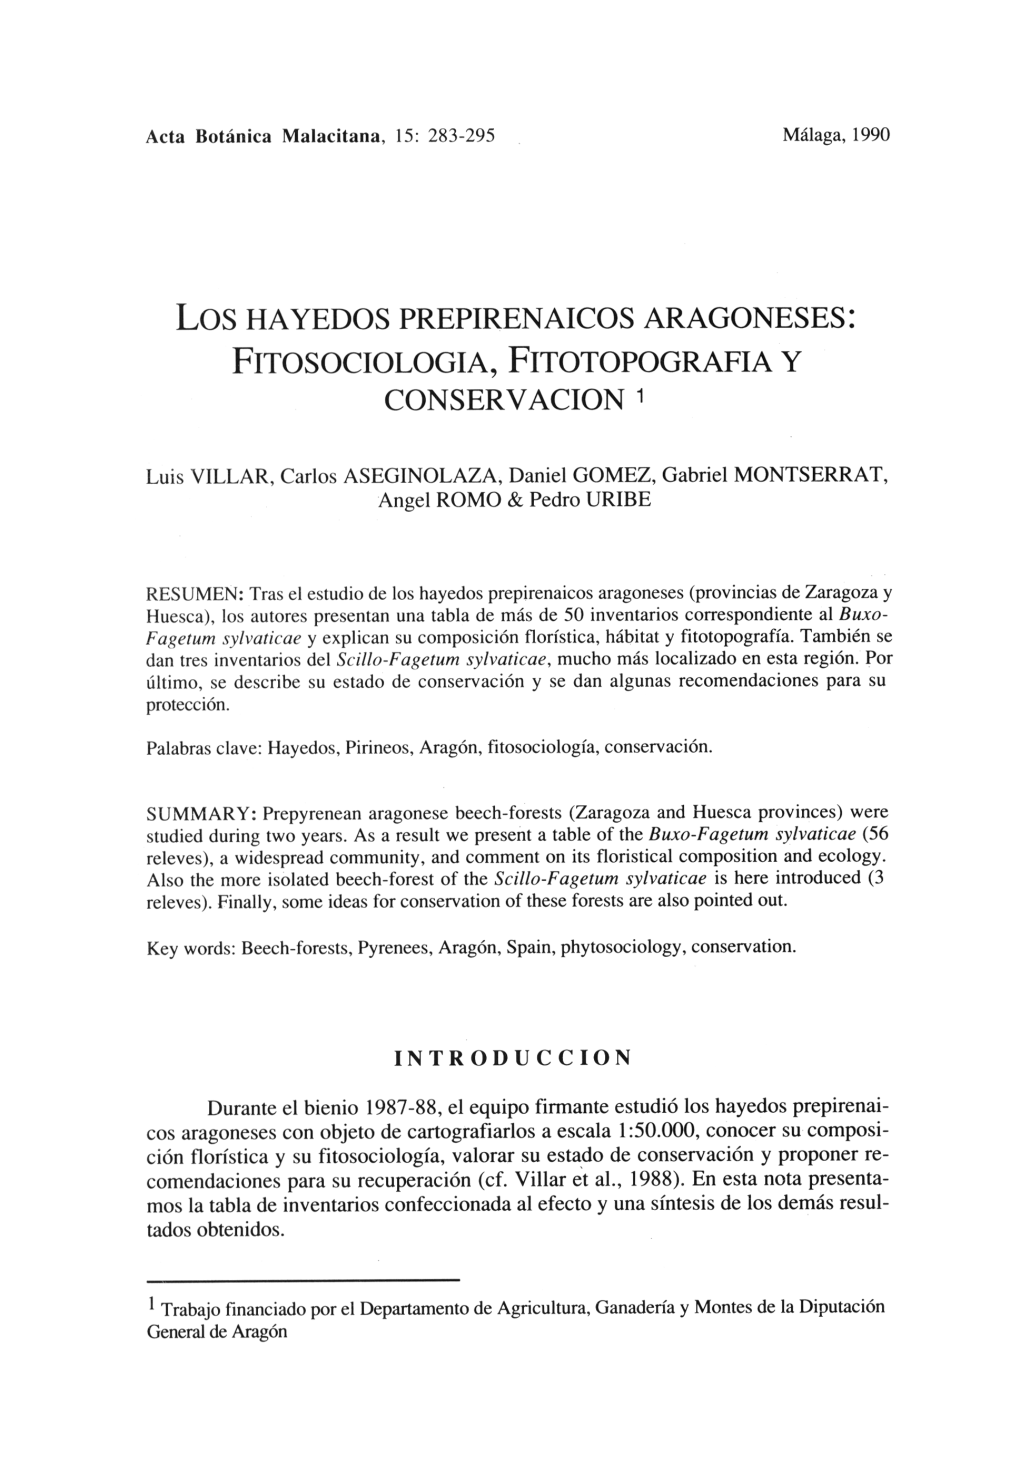 Los HAYEDOS PREPIRENAICOS ARAGONESES: FITOSOCIOLOGIA, FITOTOPOGRAFIA Y CONSERVACION 1